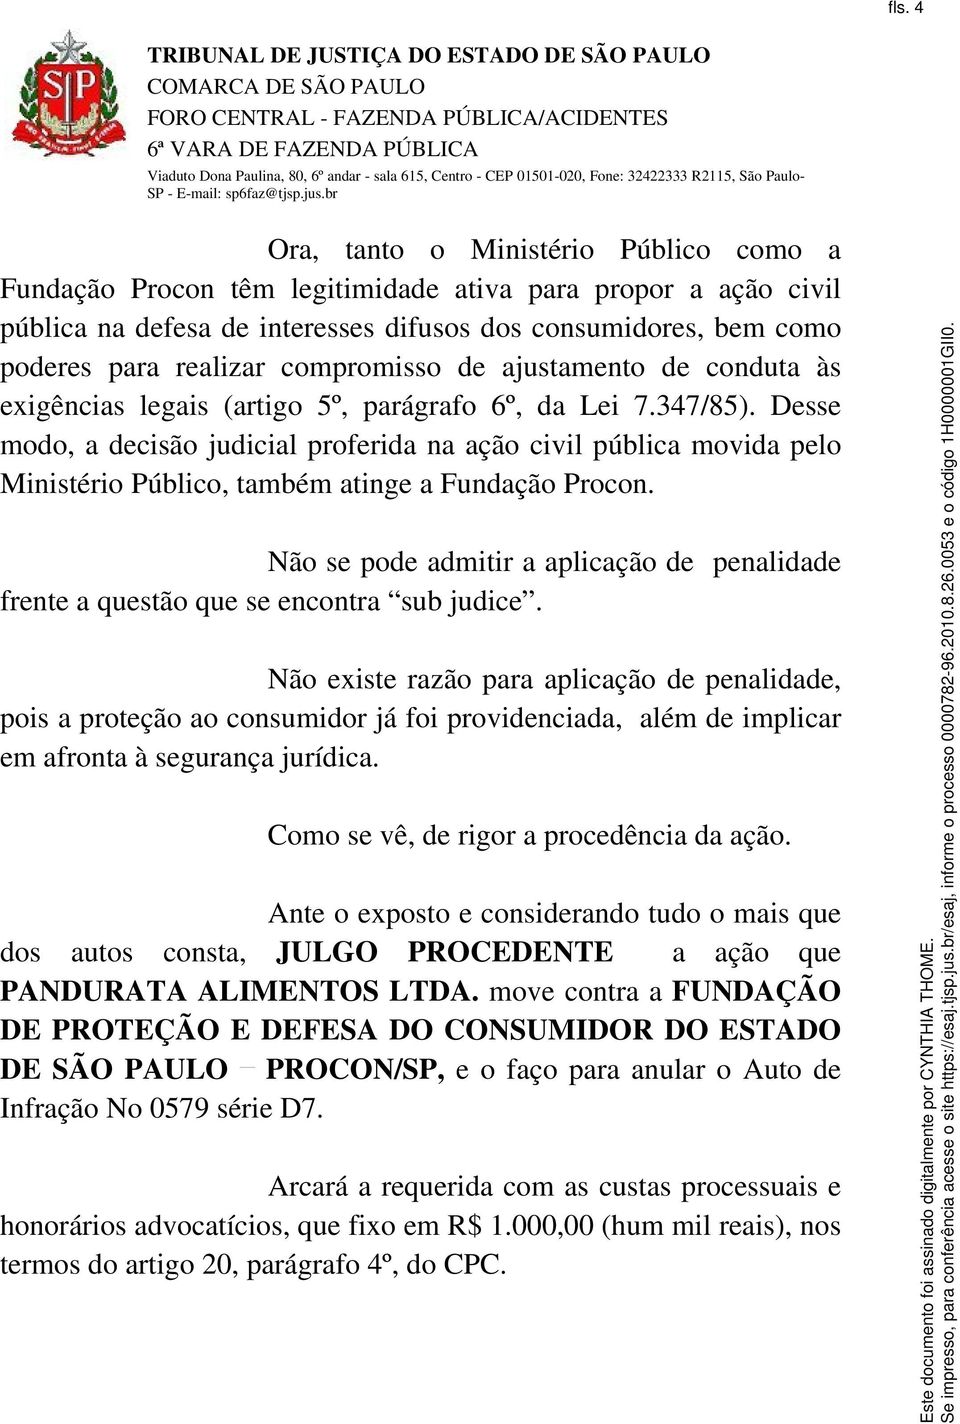 Desse modo, a decisão judicial proferida na ação civil pública movida pelo Ministério Público, também atinge a Fundação Procon.